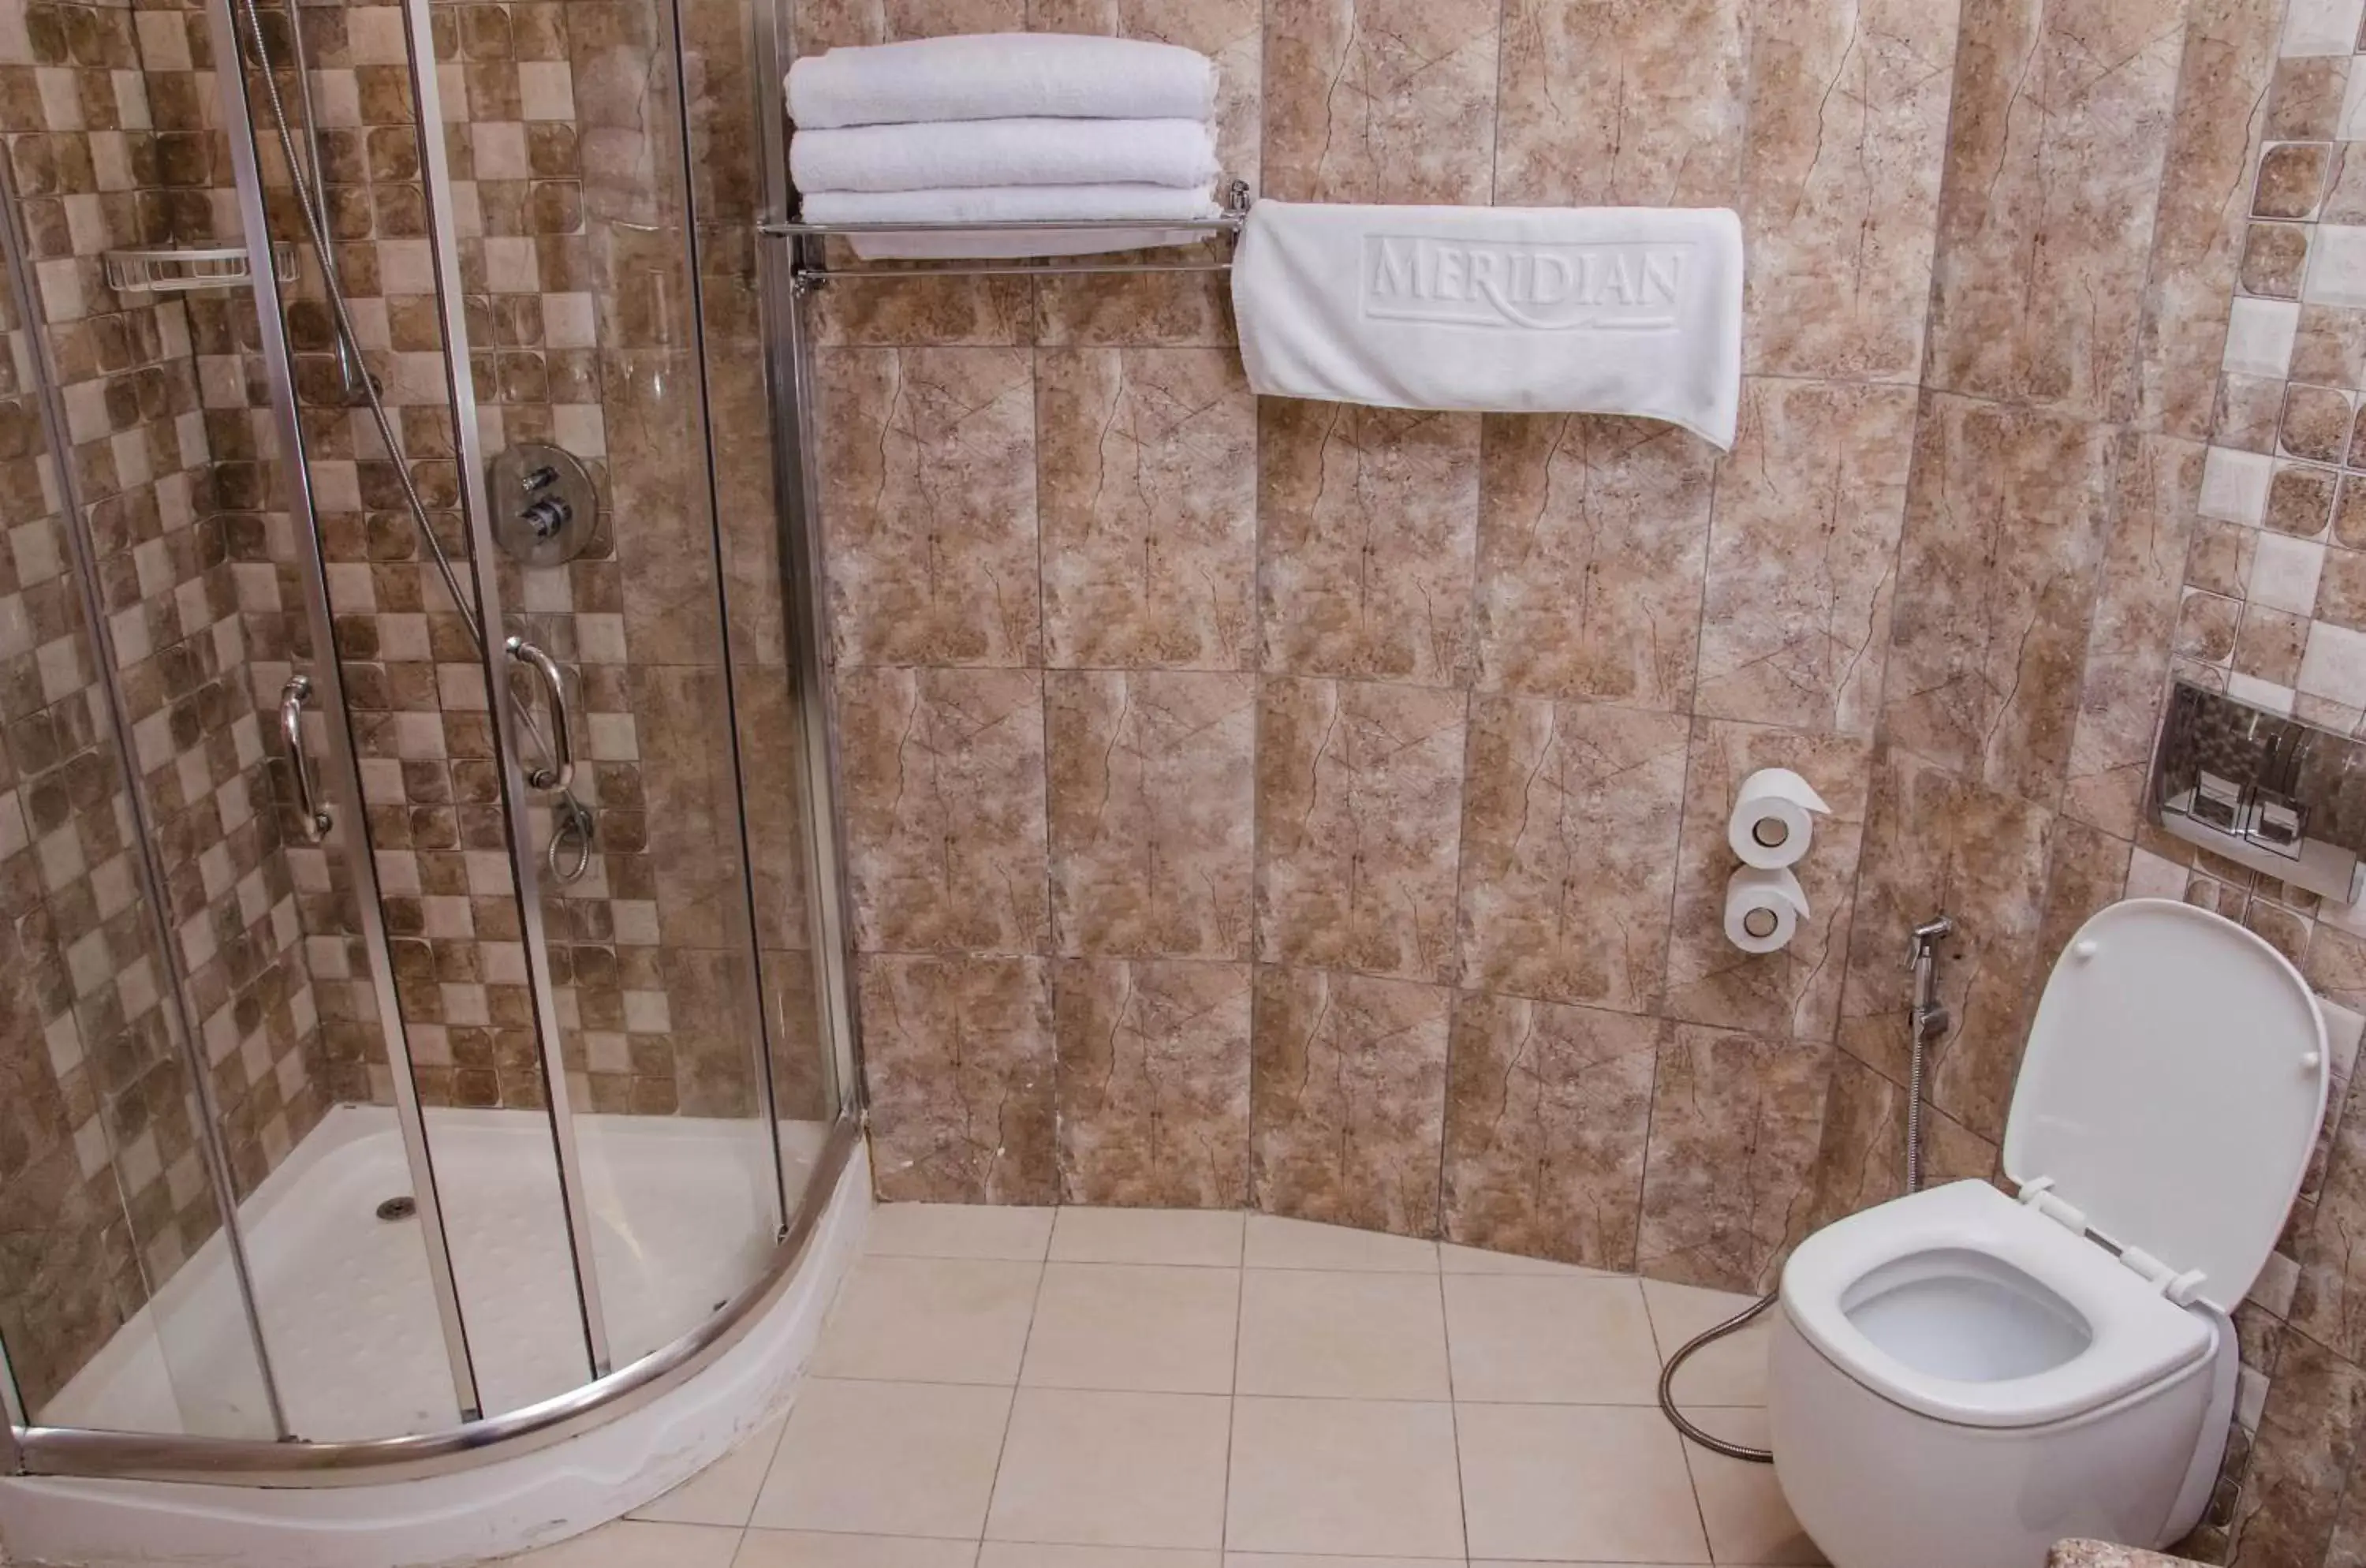 Shower, Bathroom in Best Western Plus Meridian Hotel